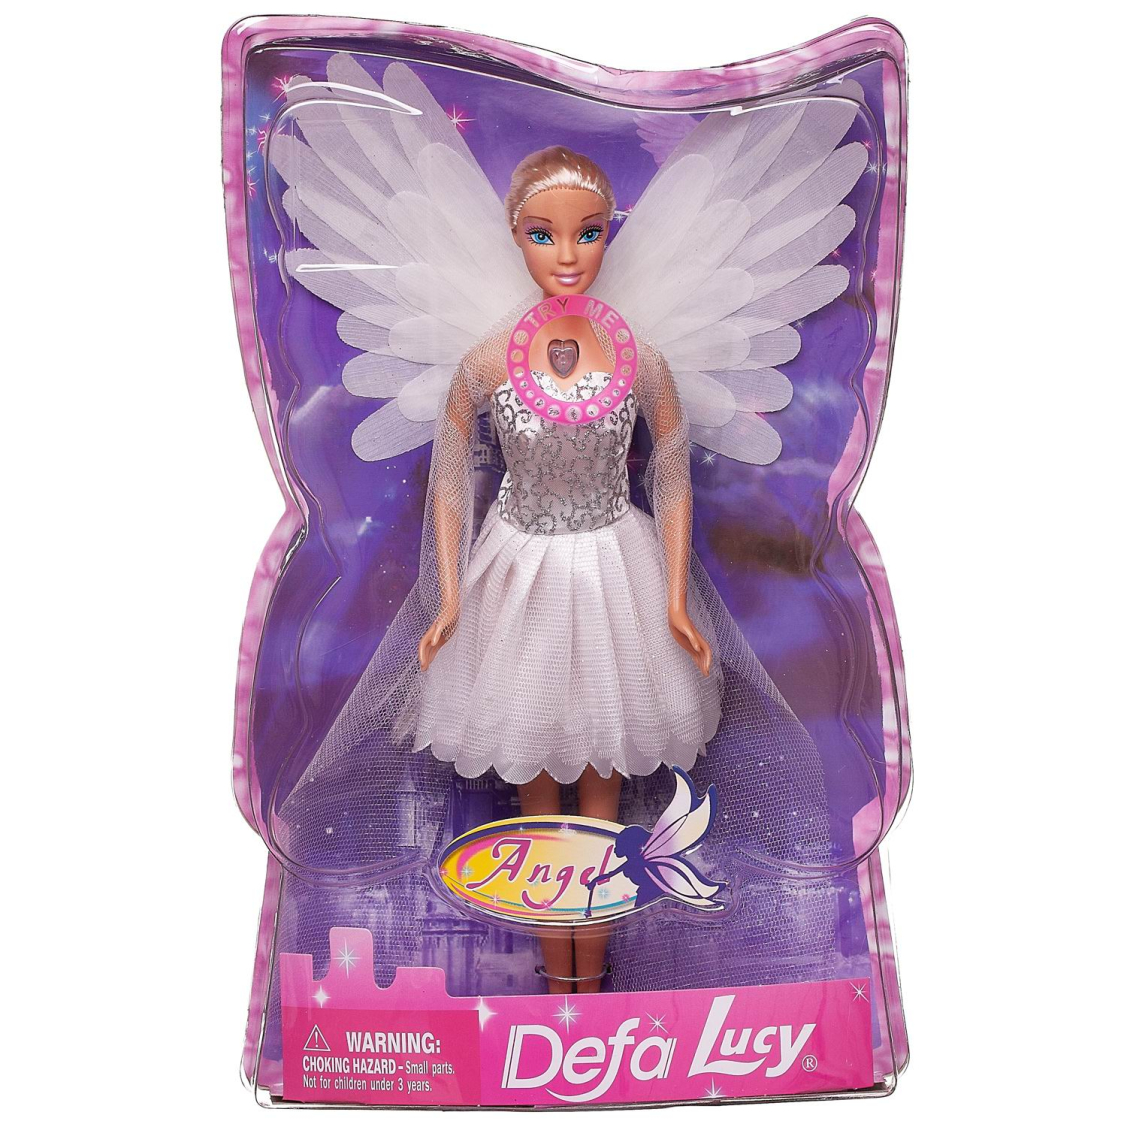 Кукла Defa Lucy Ангел со световыми эффектами 29см | купить, цена, отзывы